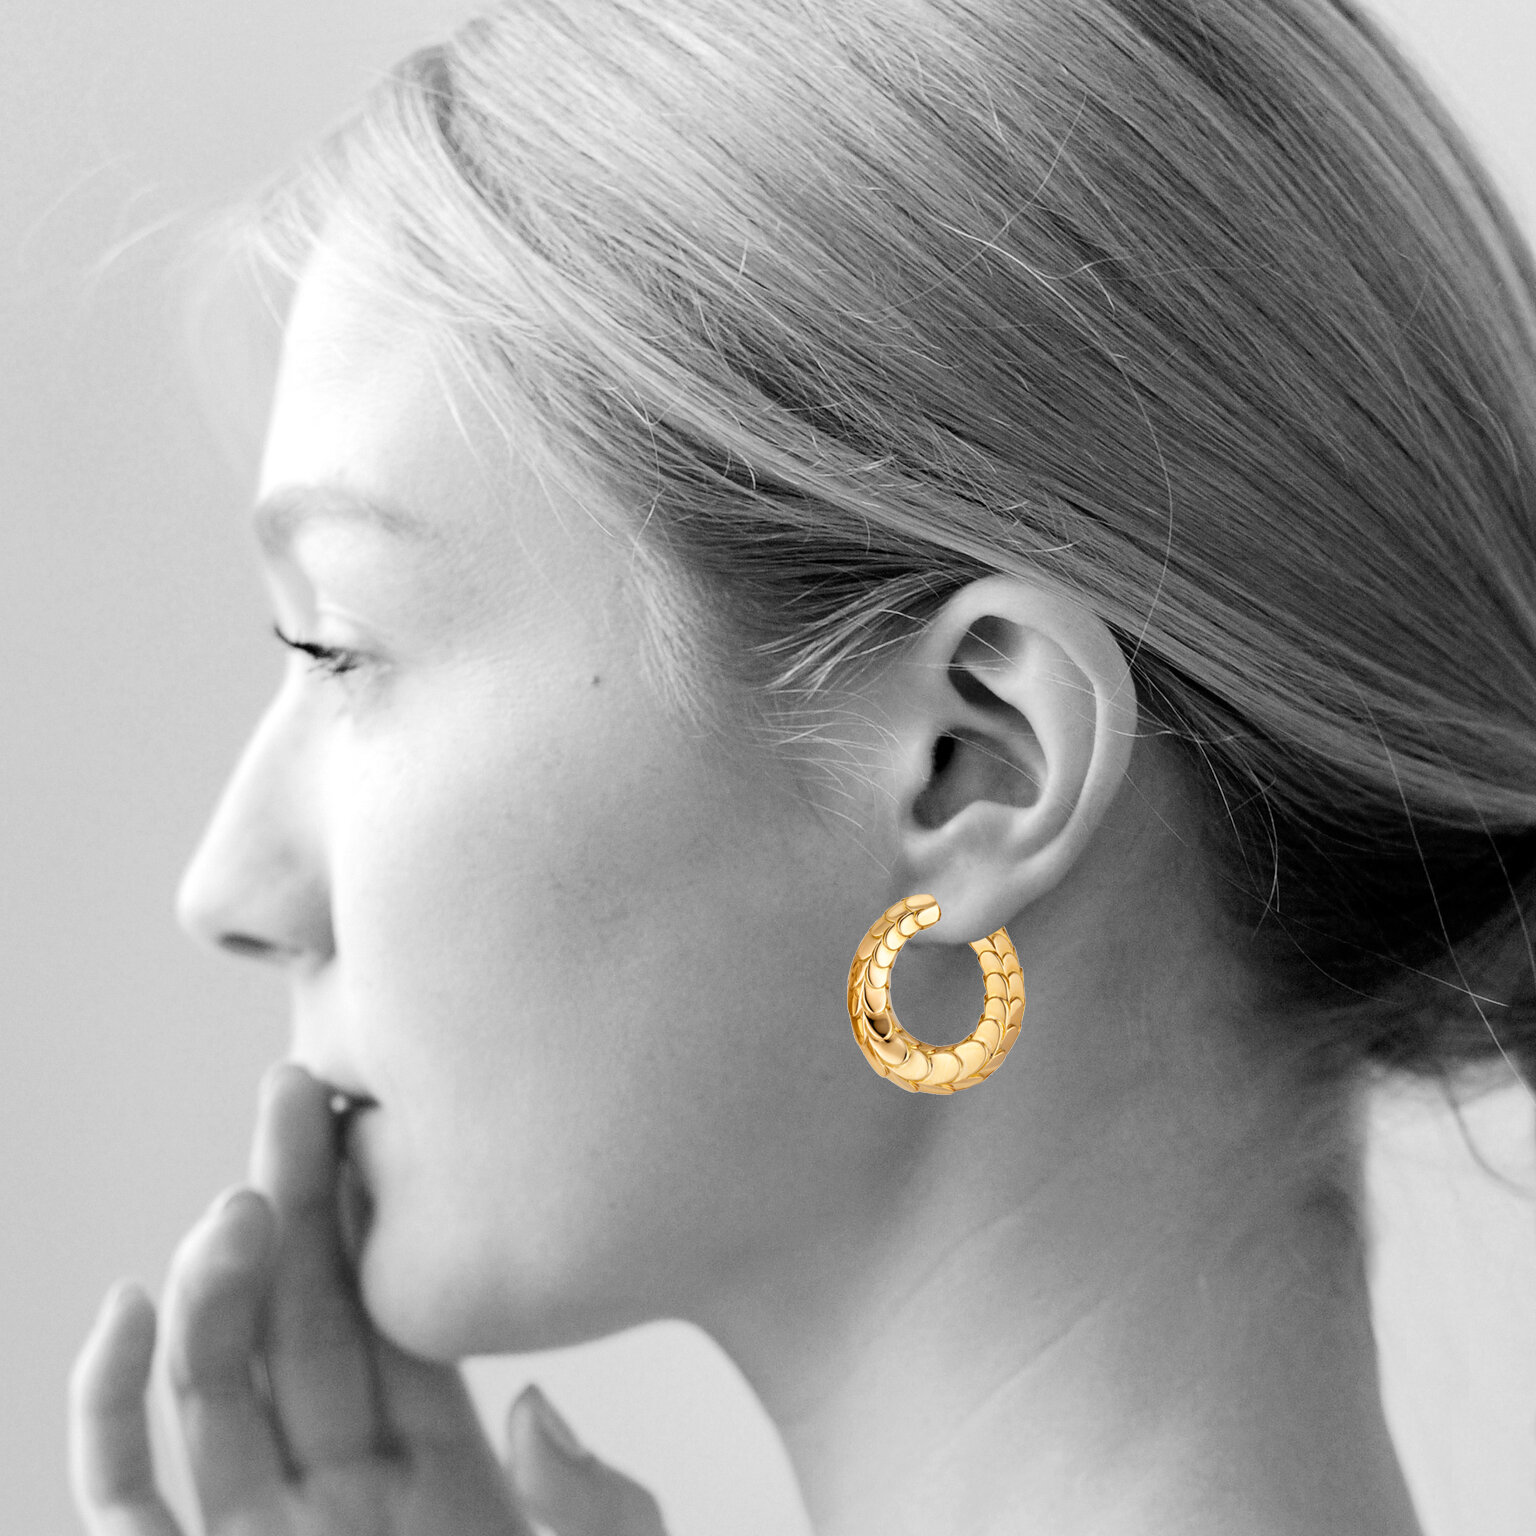 cartier clip on earrings